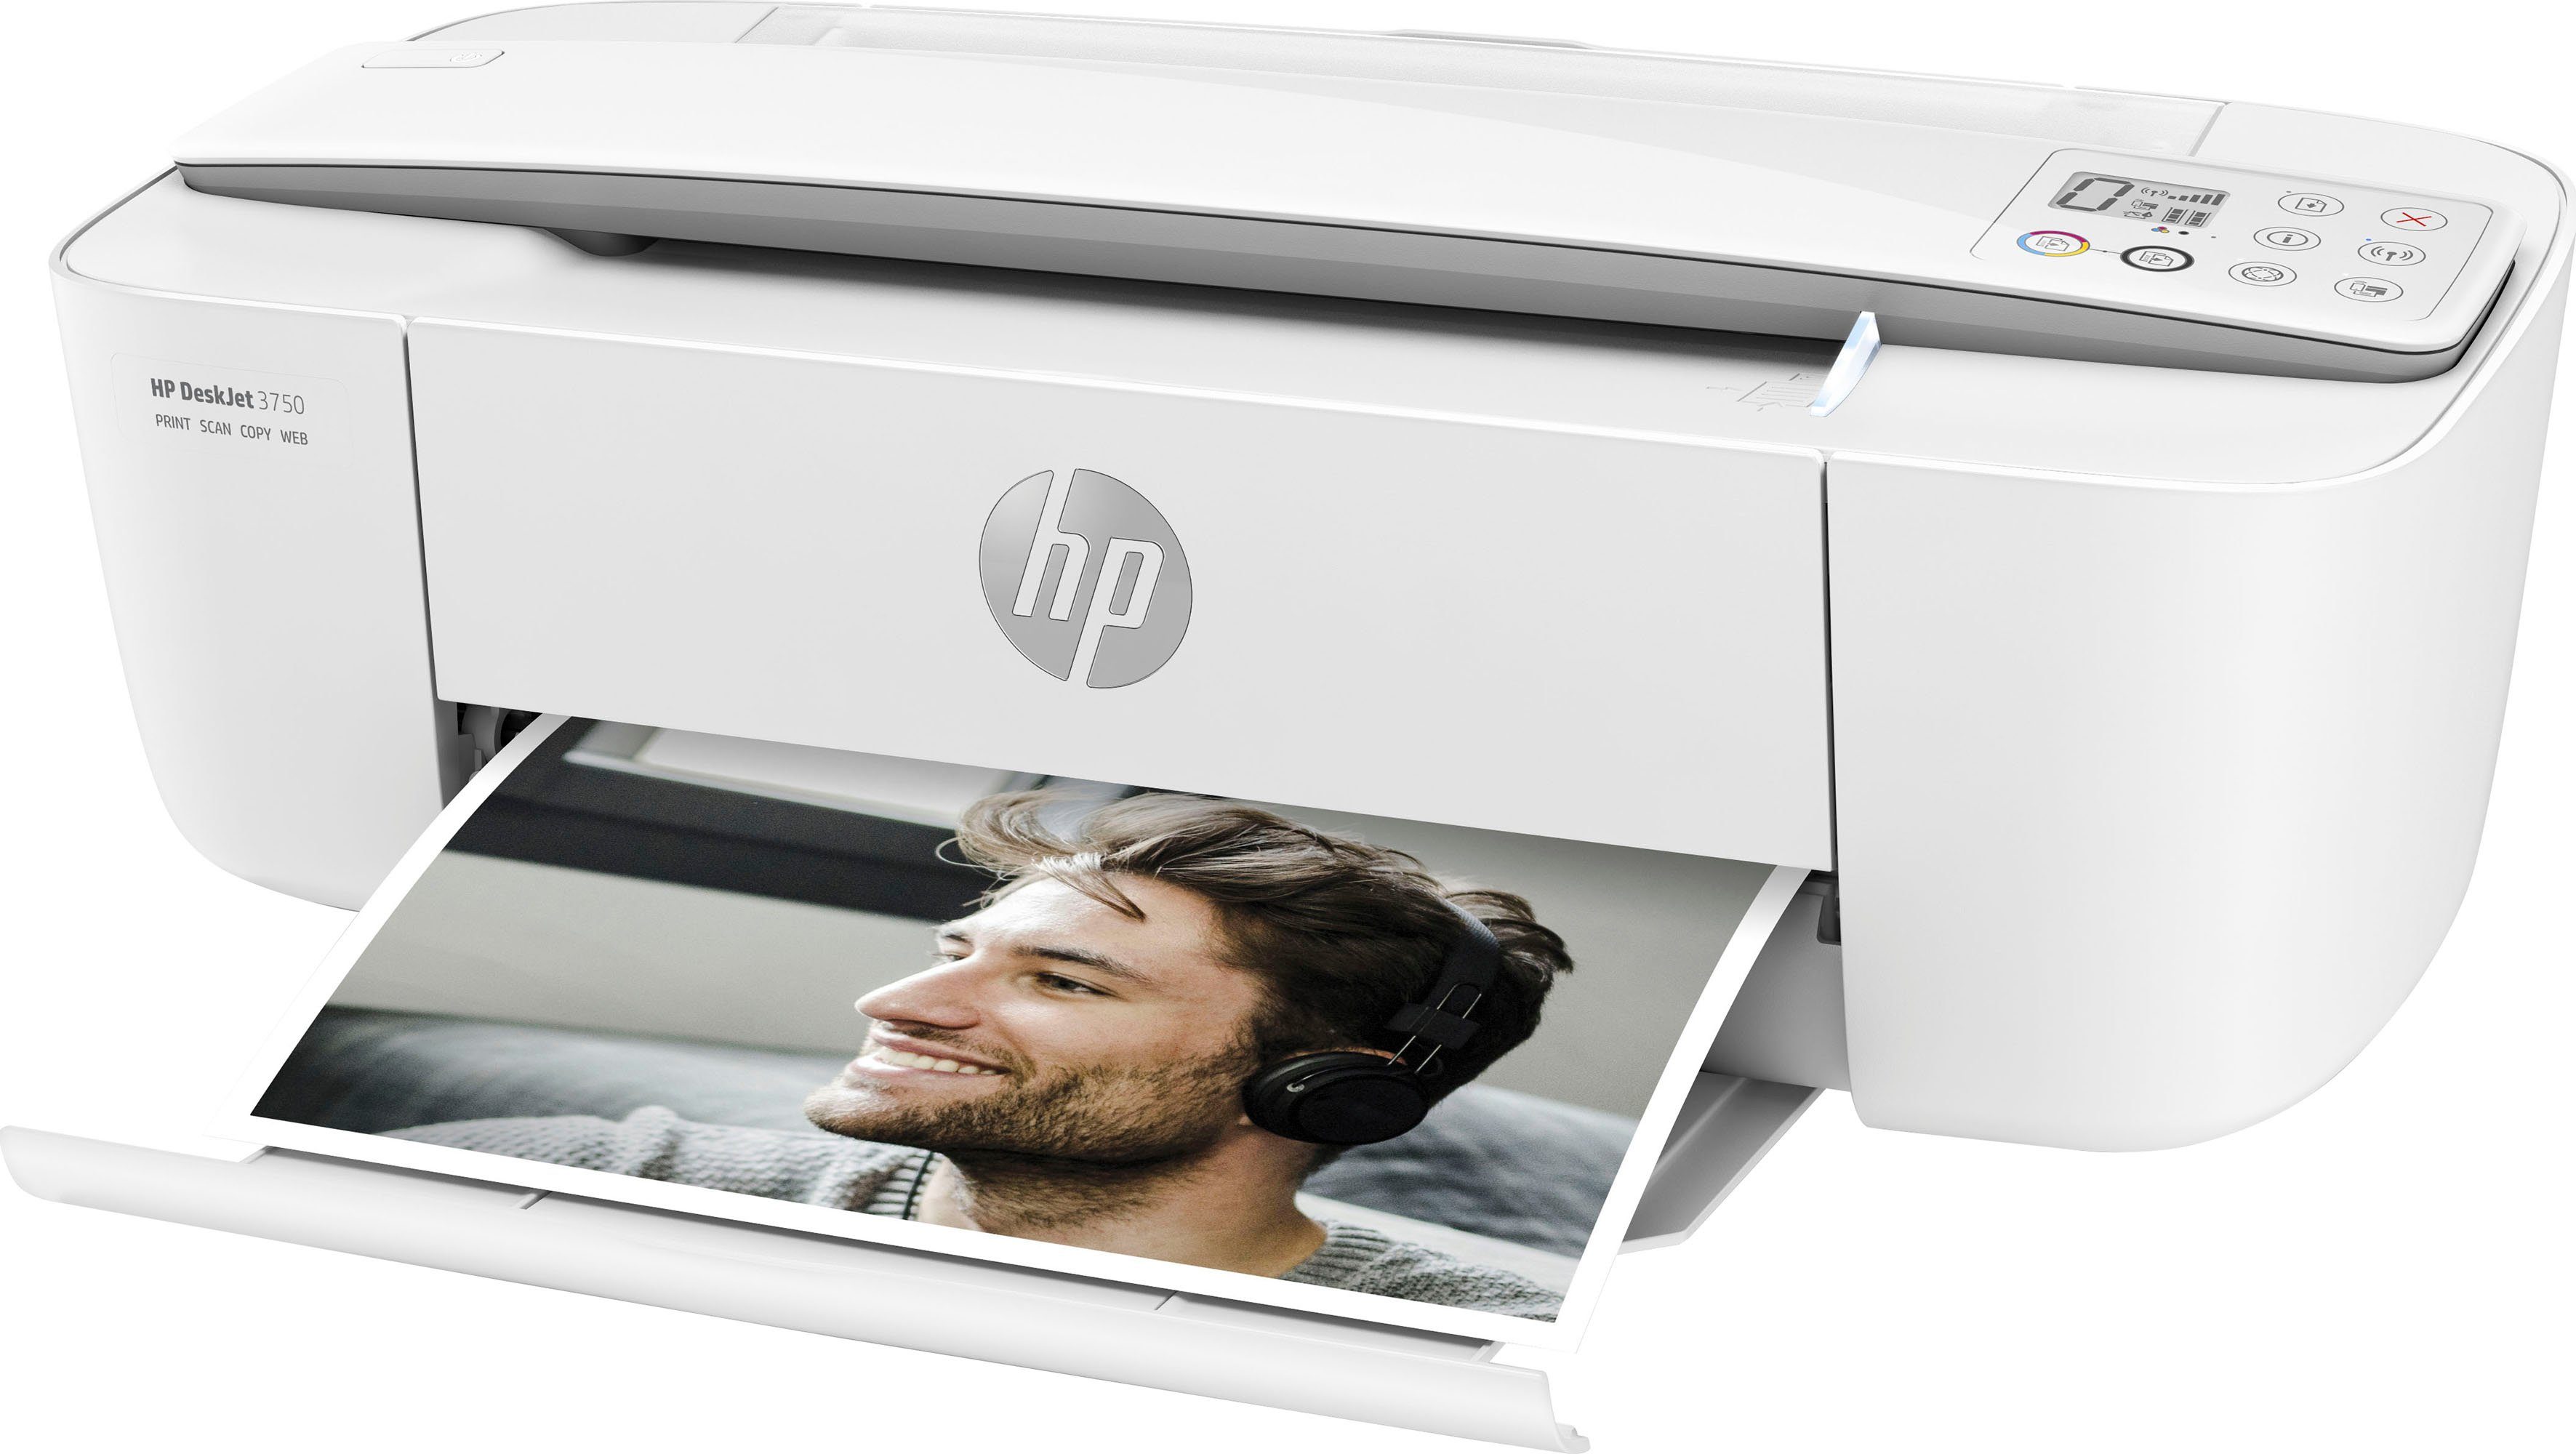 HP Drucker DeskJet 3750 Multifunktionsdrucker, (Wi-Fi), Instant Ink (WLAN HP+ kompatibel)